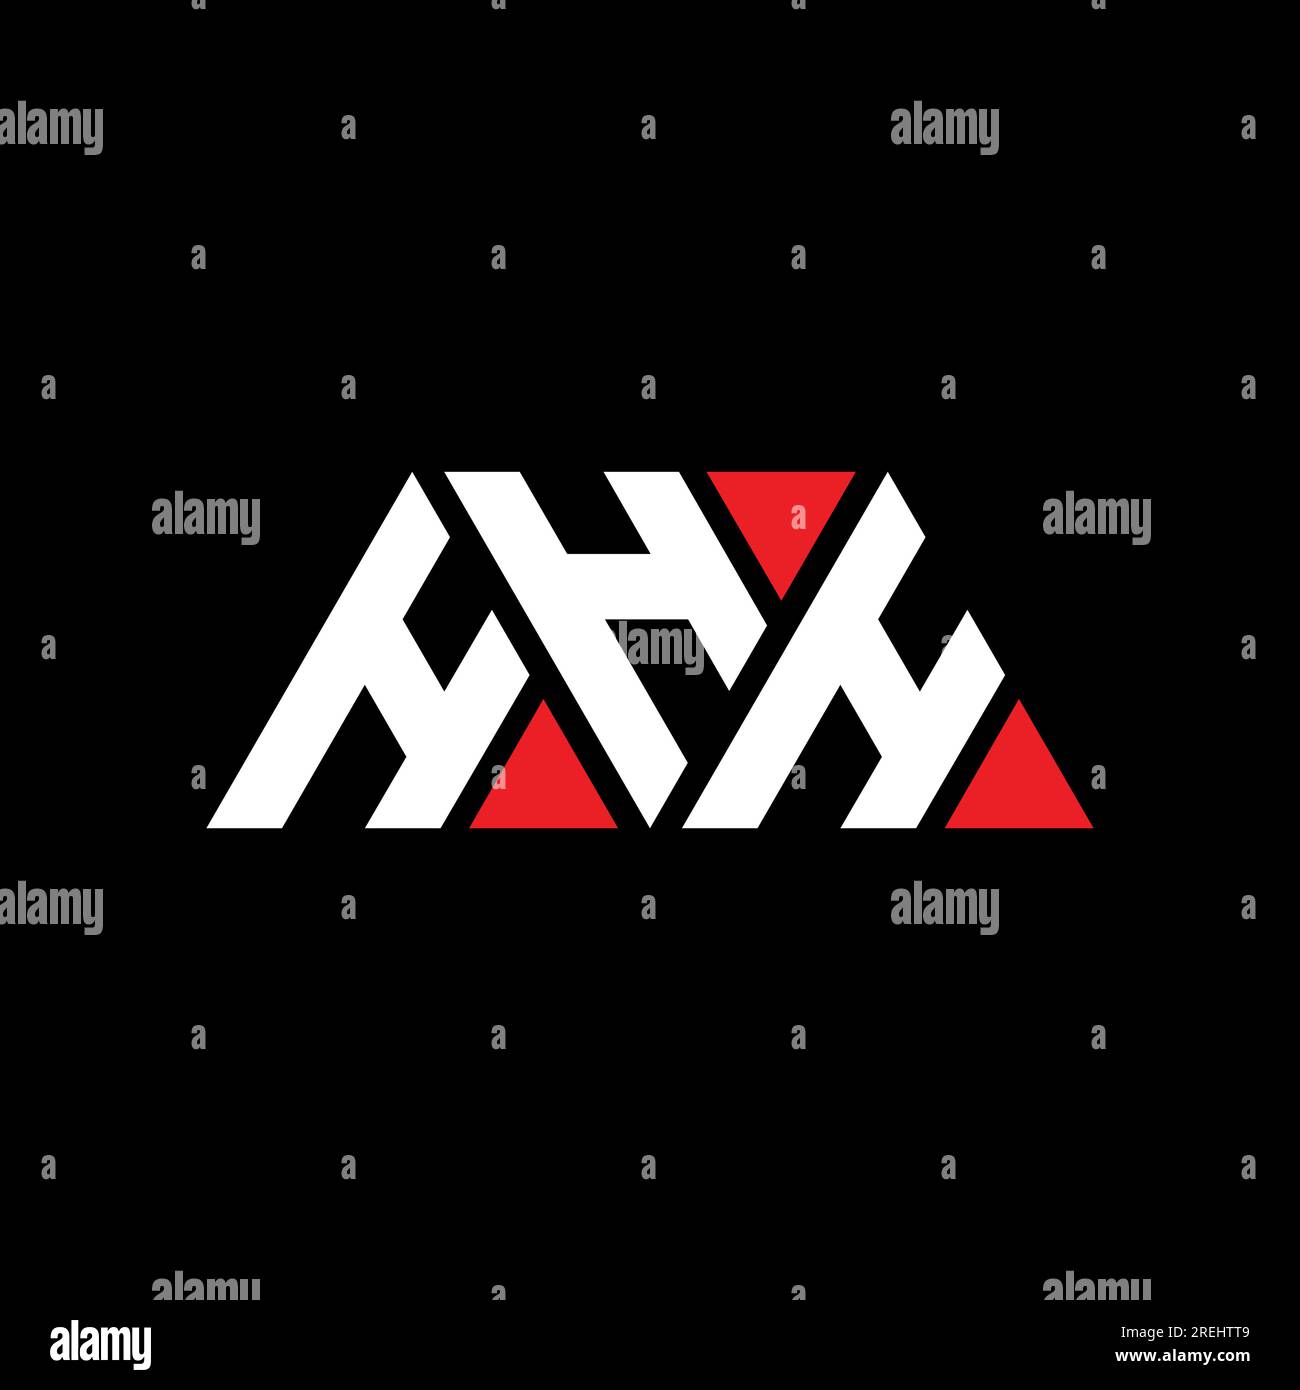 HHH-Logo mit Dreiecksbuchstaben und Dreiecksform. HHH-Dreieck-Logo-Monogramm. HHH-Dreieck-Vektor-Logo-Vorlage mit roter Farbe. HHH Triangul Stock Vektor